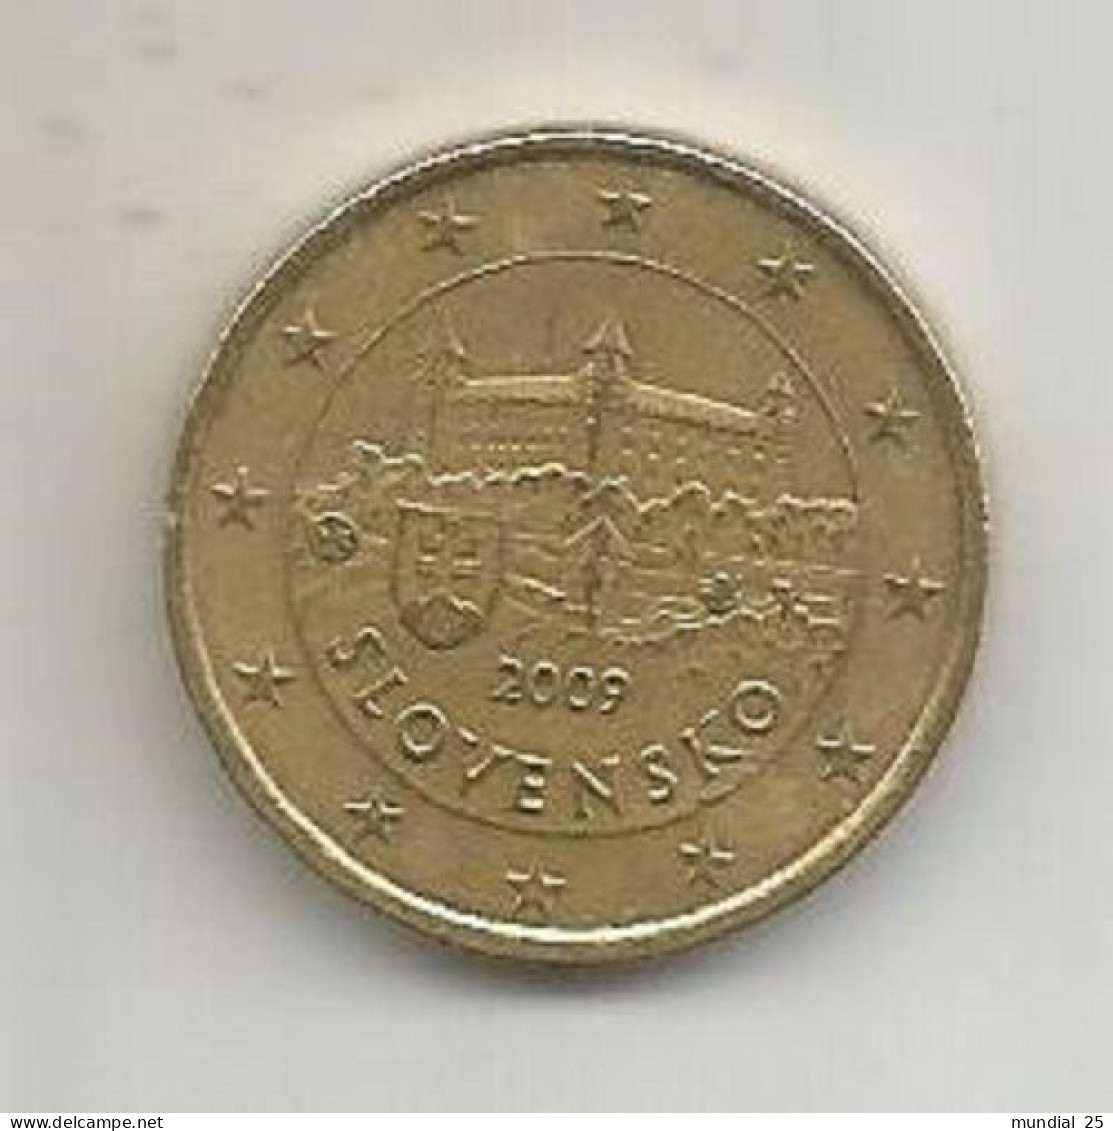 SLOVAKIA 50 EURO CENT 2009 - Slovacchia